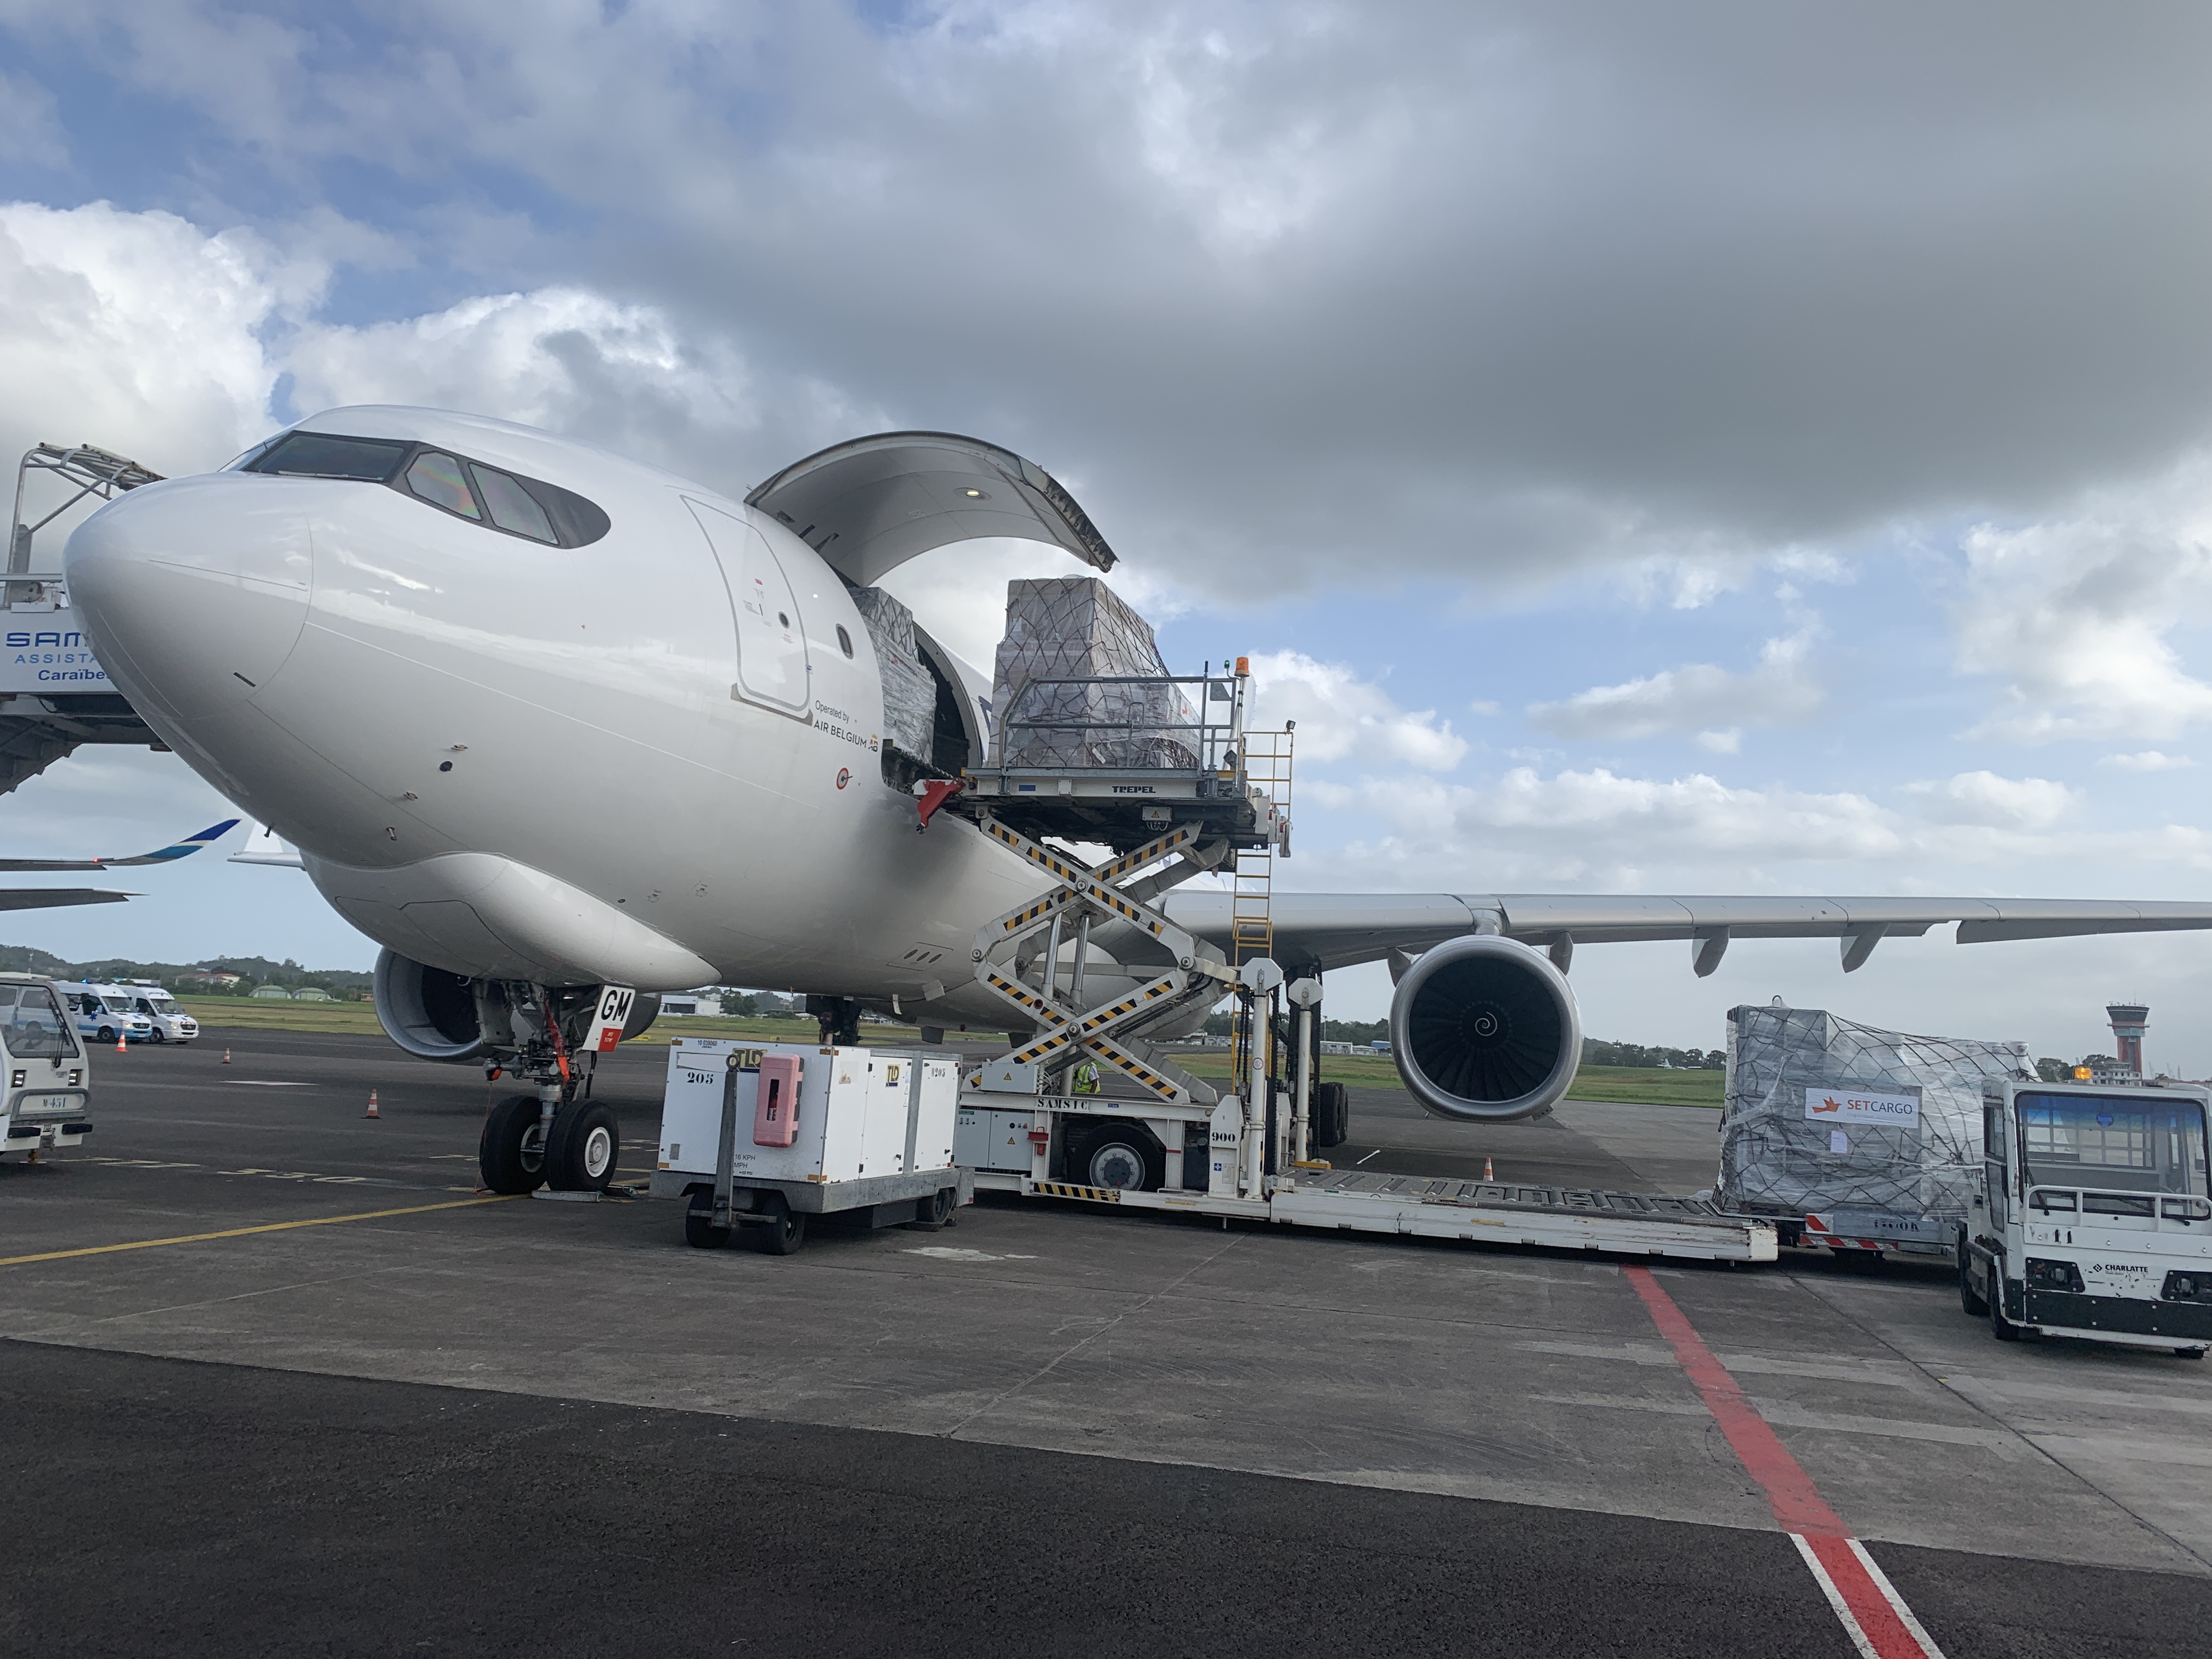     Plusieurs tonnes de matériels médicaux sont arrivés en Guadeloupe

